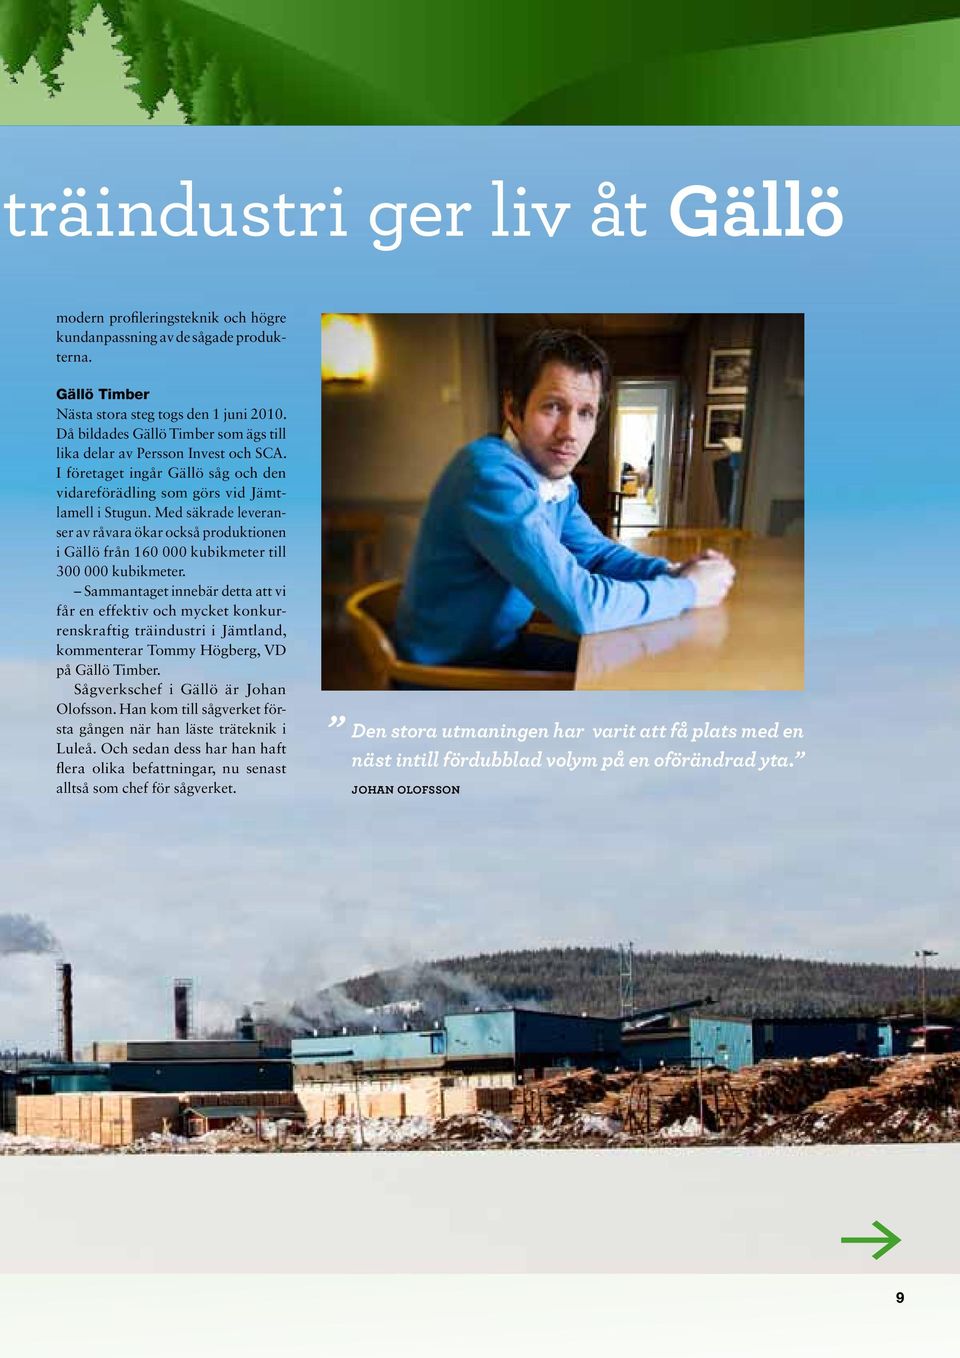 Med säkrade leveranser av råvara ökar också produktionen i Gällö från 160 000 kubikmeter till 300 000 kubikmeter.